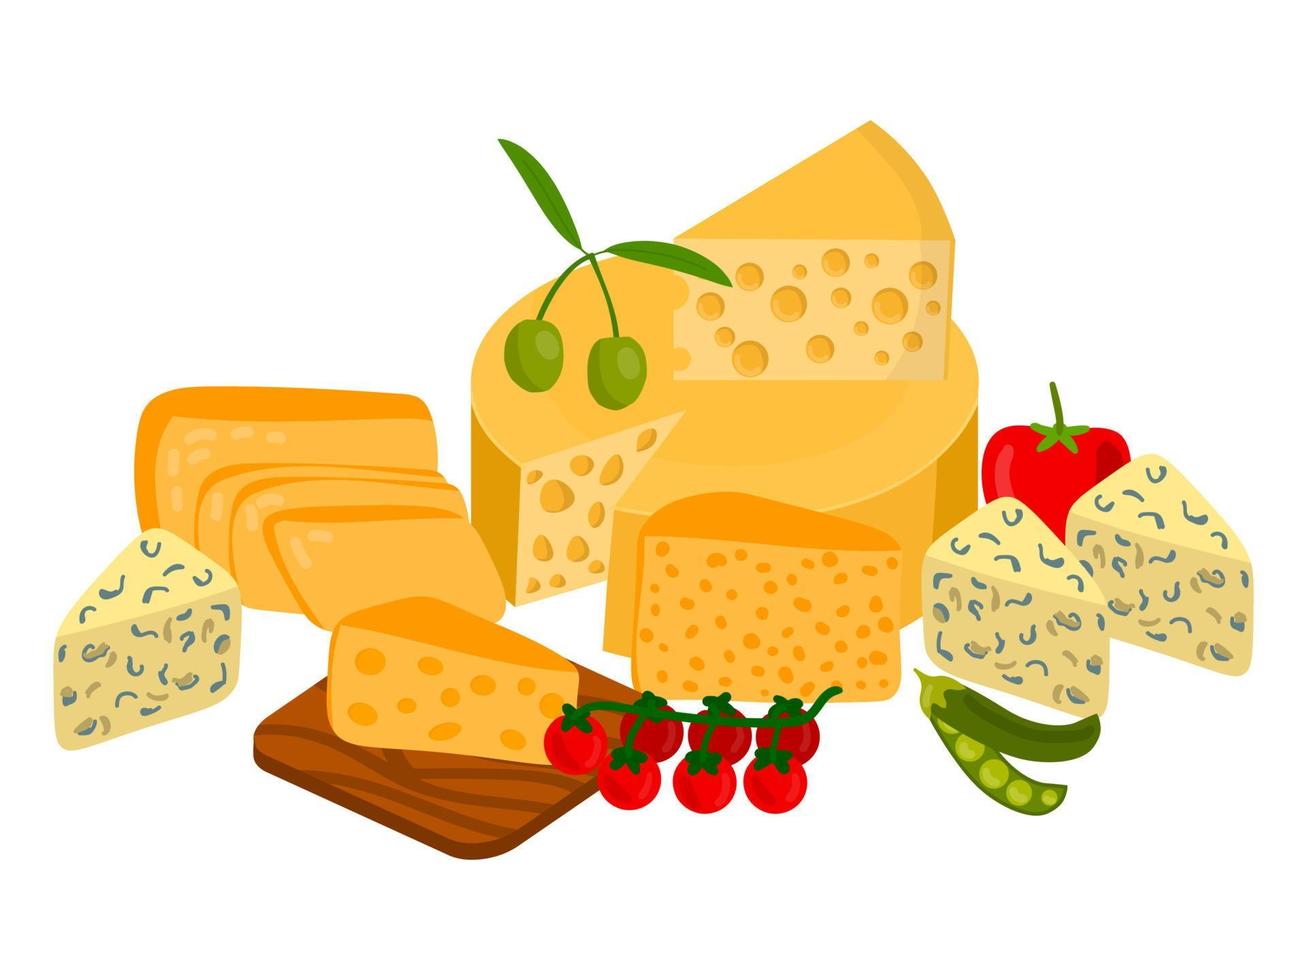 söta olika sorters ost. sammansättning av mejeriprodukter isolerad på vit bakgrund. ädelost och bearbetad ost, cheddar och parmesan, camembert och gouda. vektor